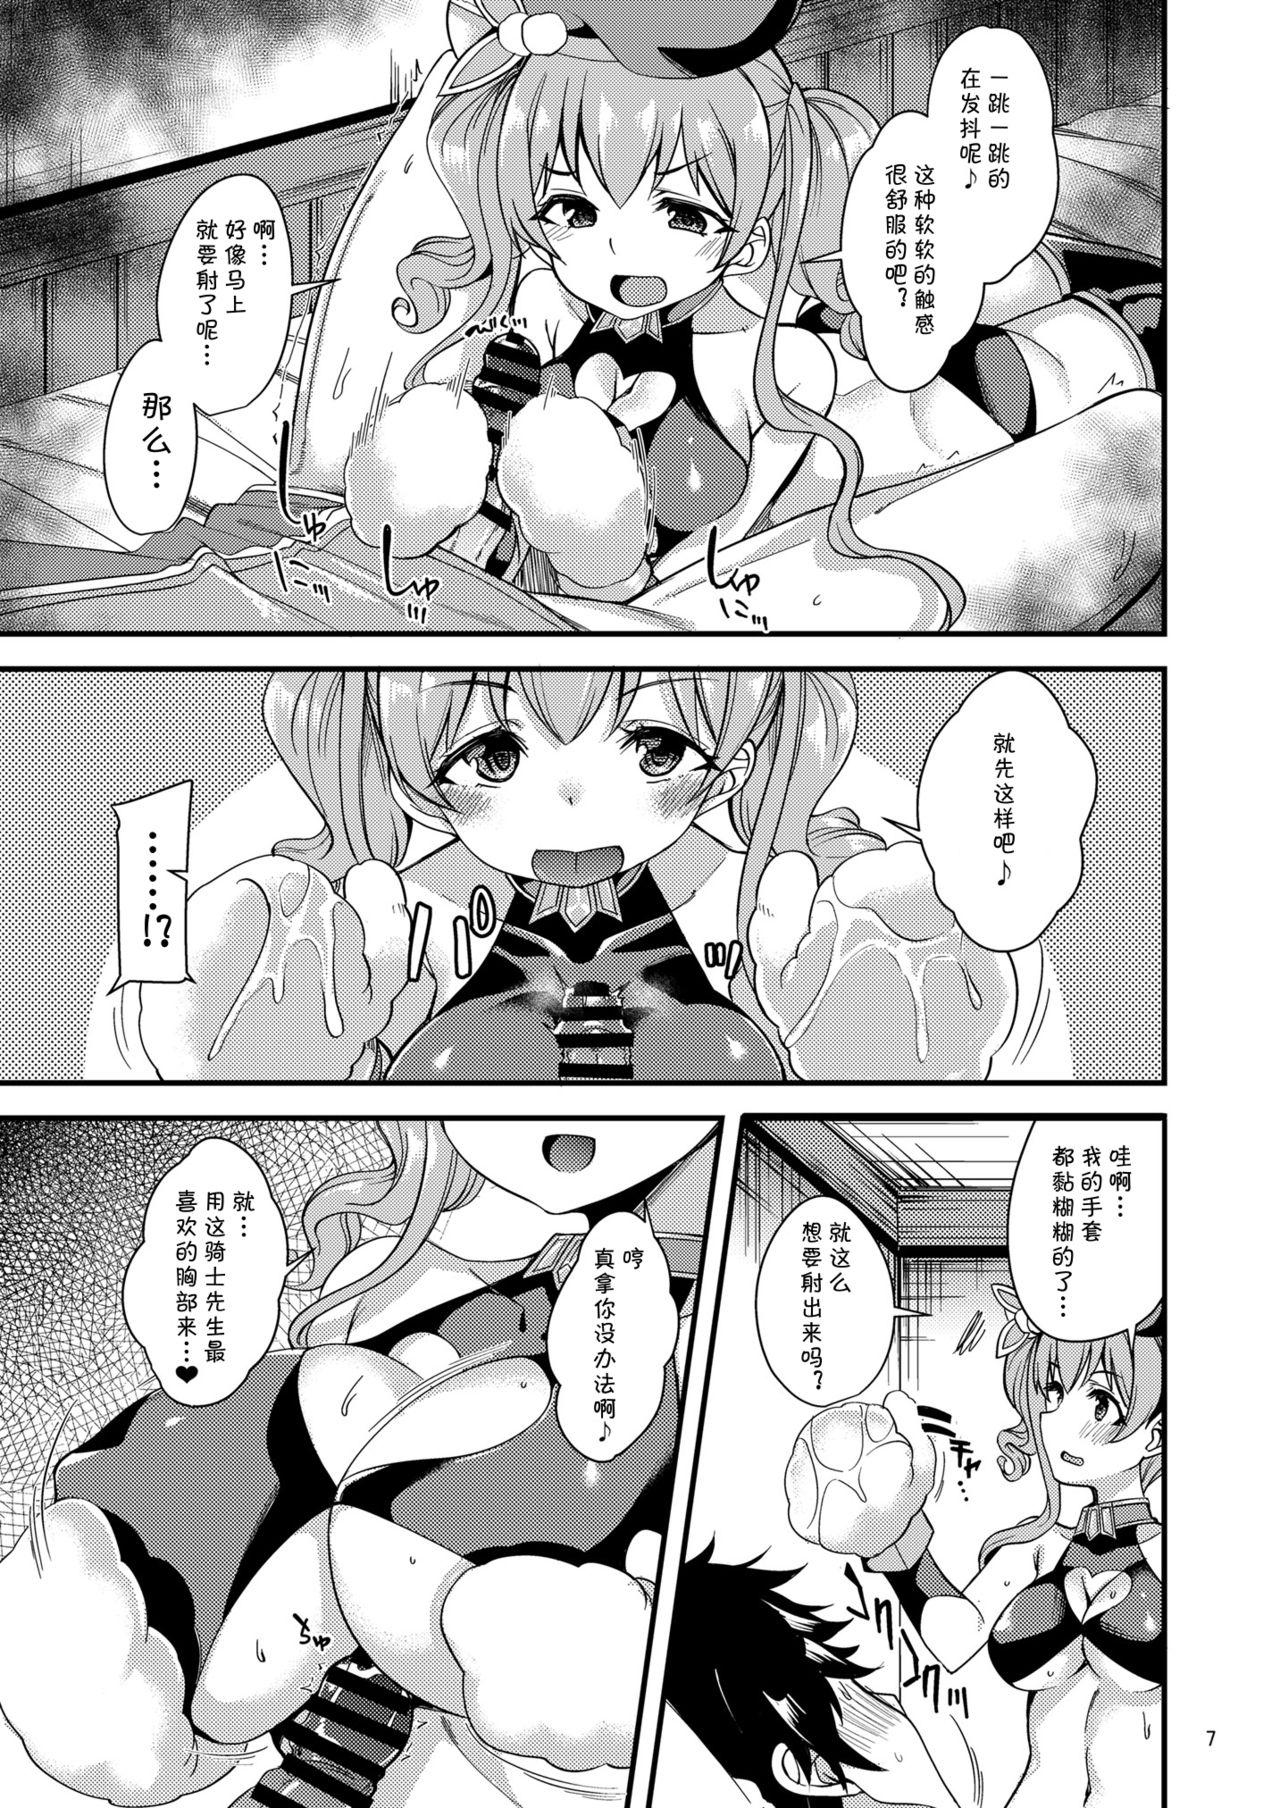 Dirty Tsumugi Make Heroine Move!! 04 - Princess connect Tiny - Page 8